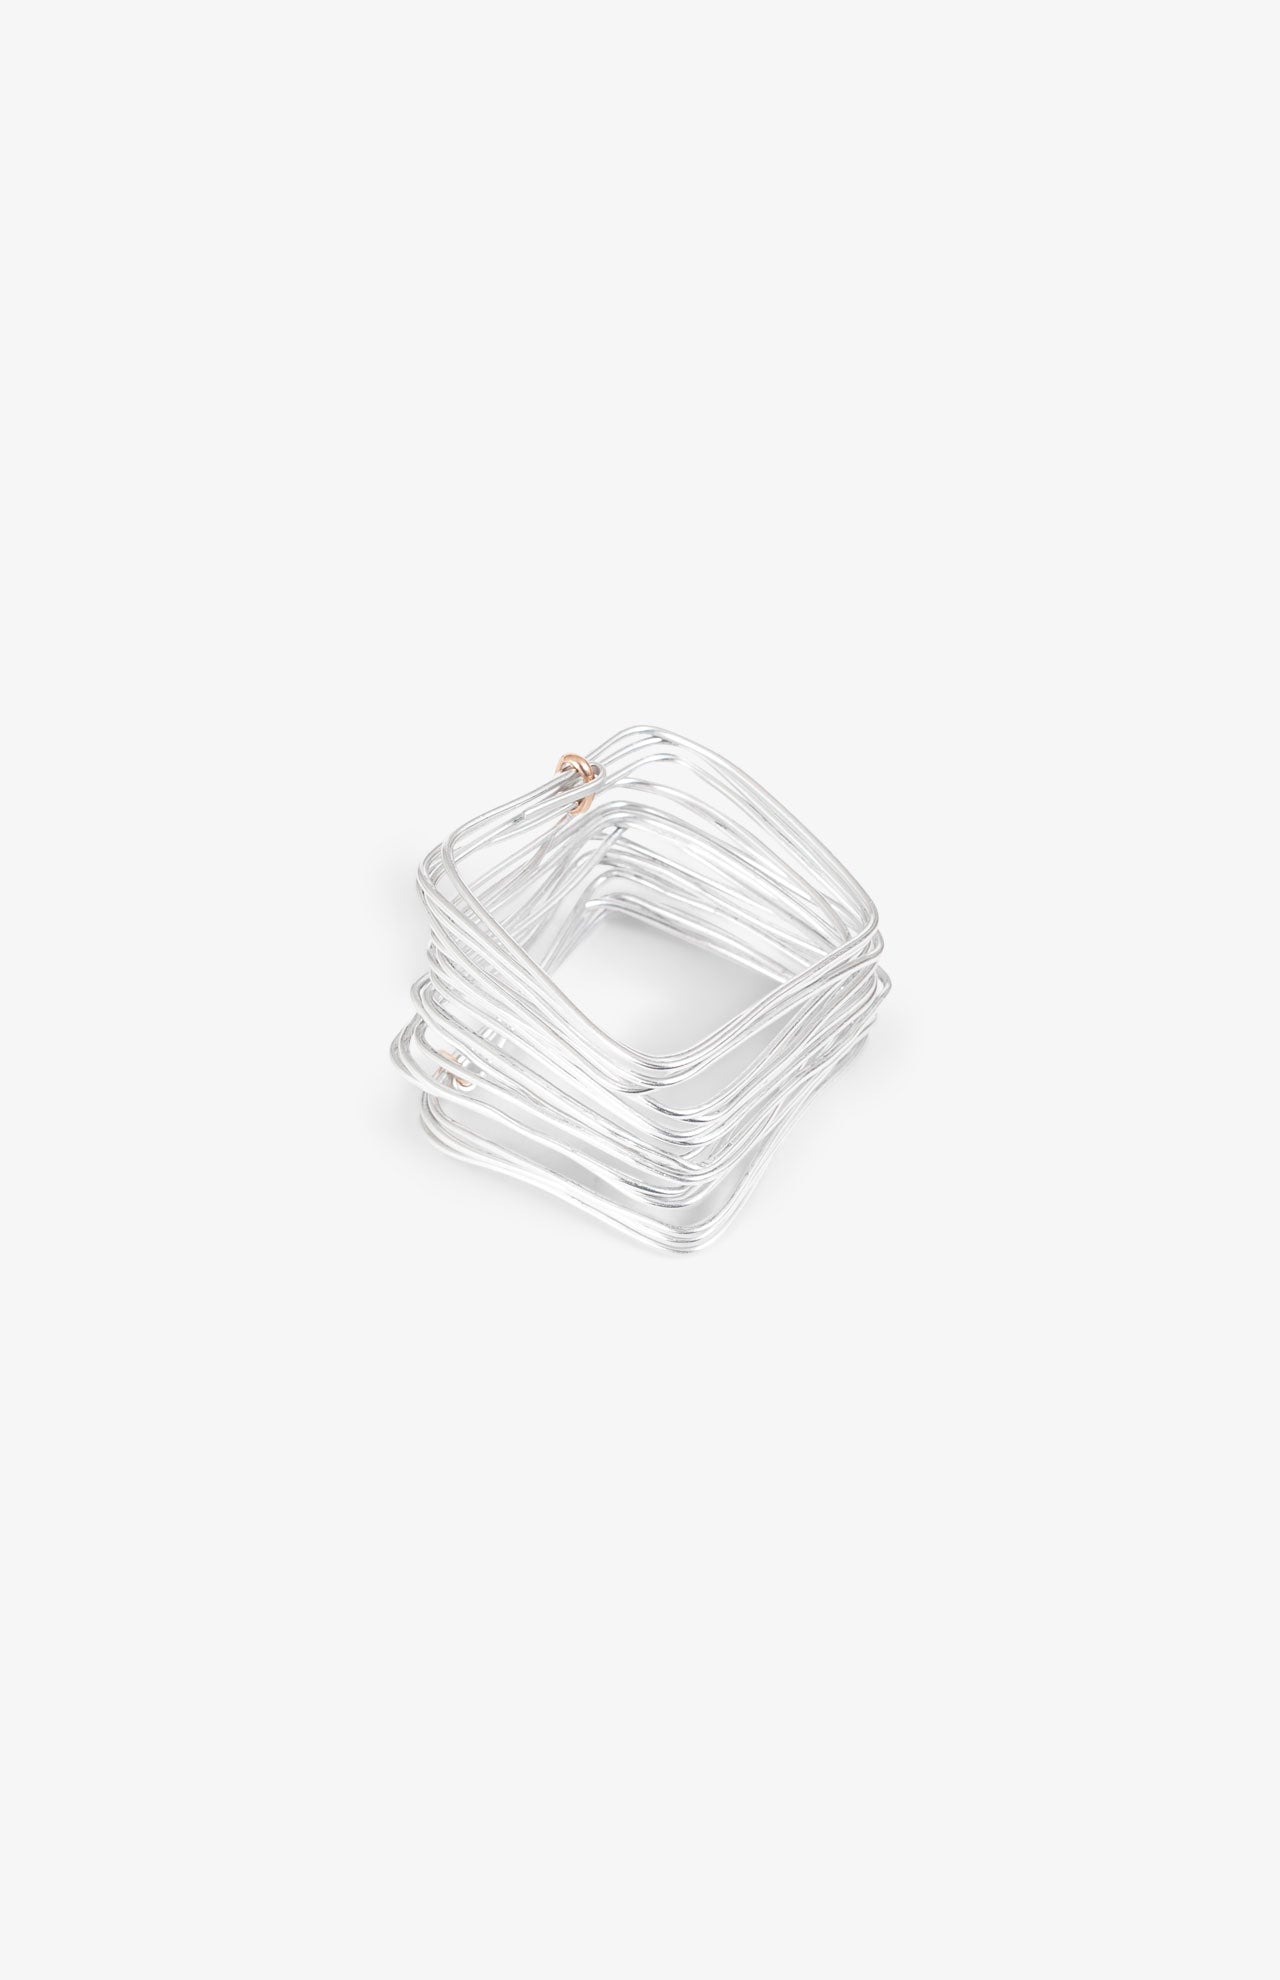 Bracelet aluminium - Carré  - Large